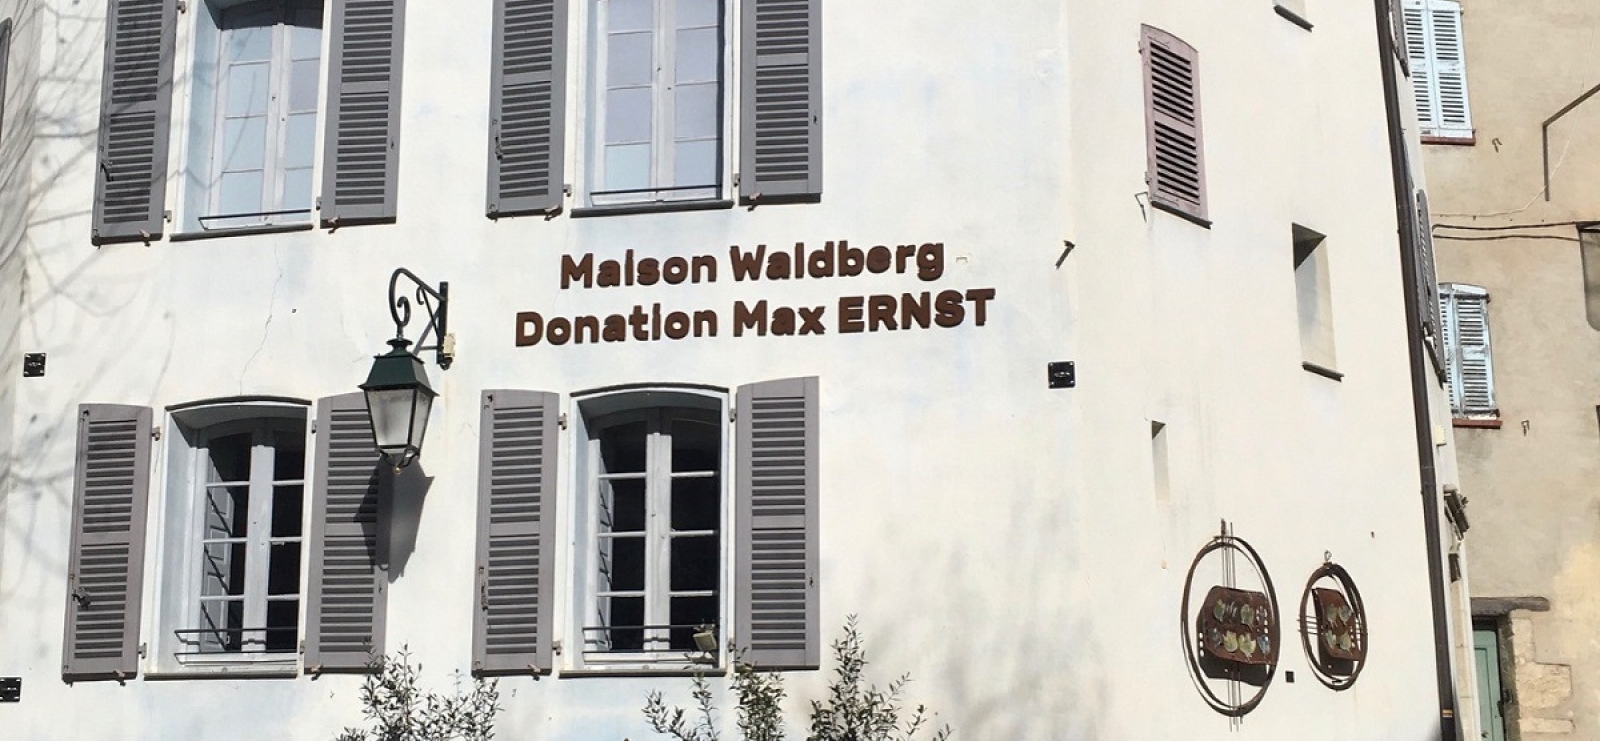 Maison Waldberg